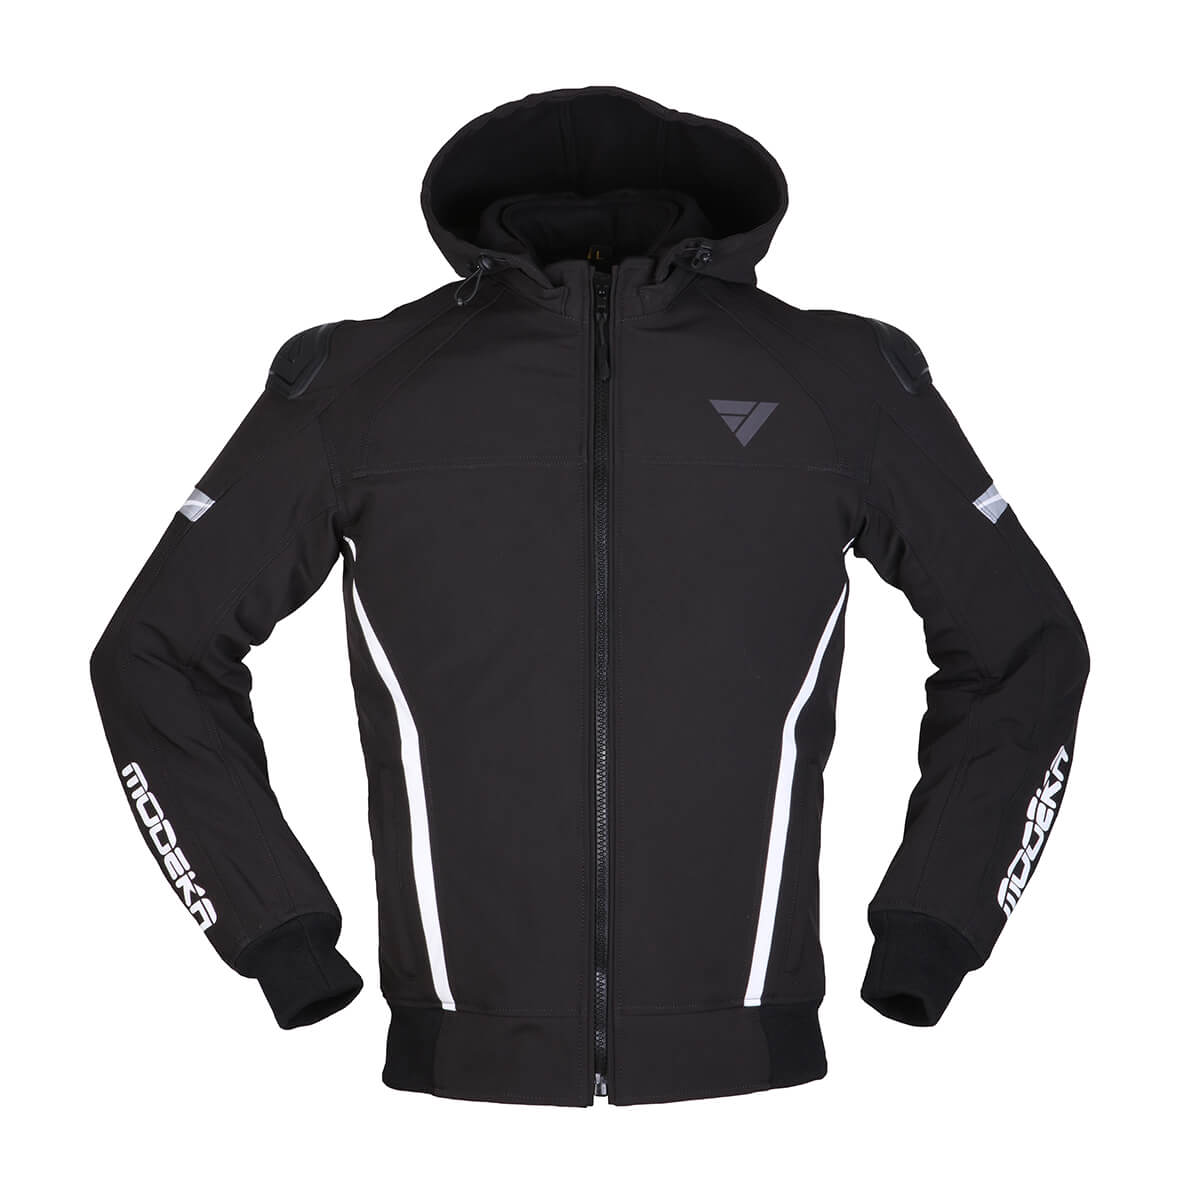 Image of Modeka Clarke Sport Jacket Black White Size XS ID 4045765189467